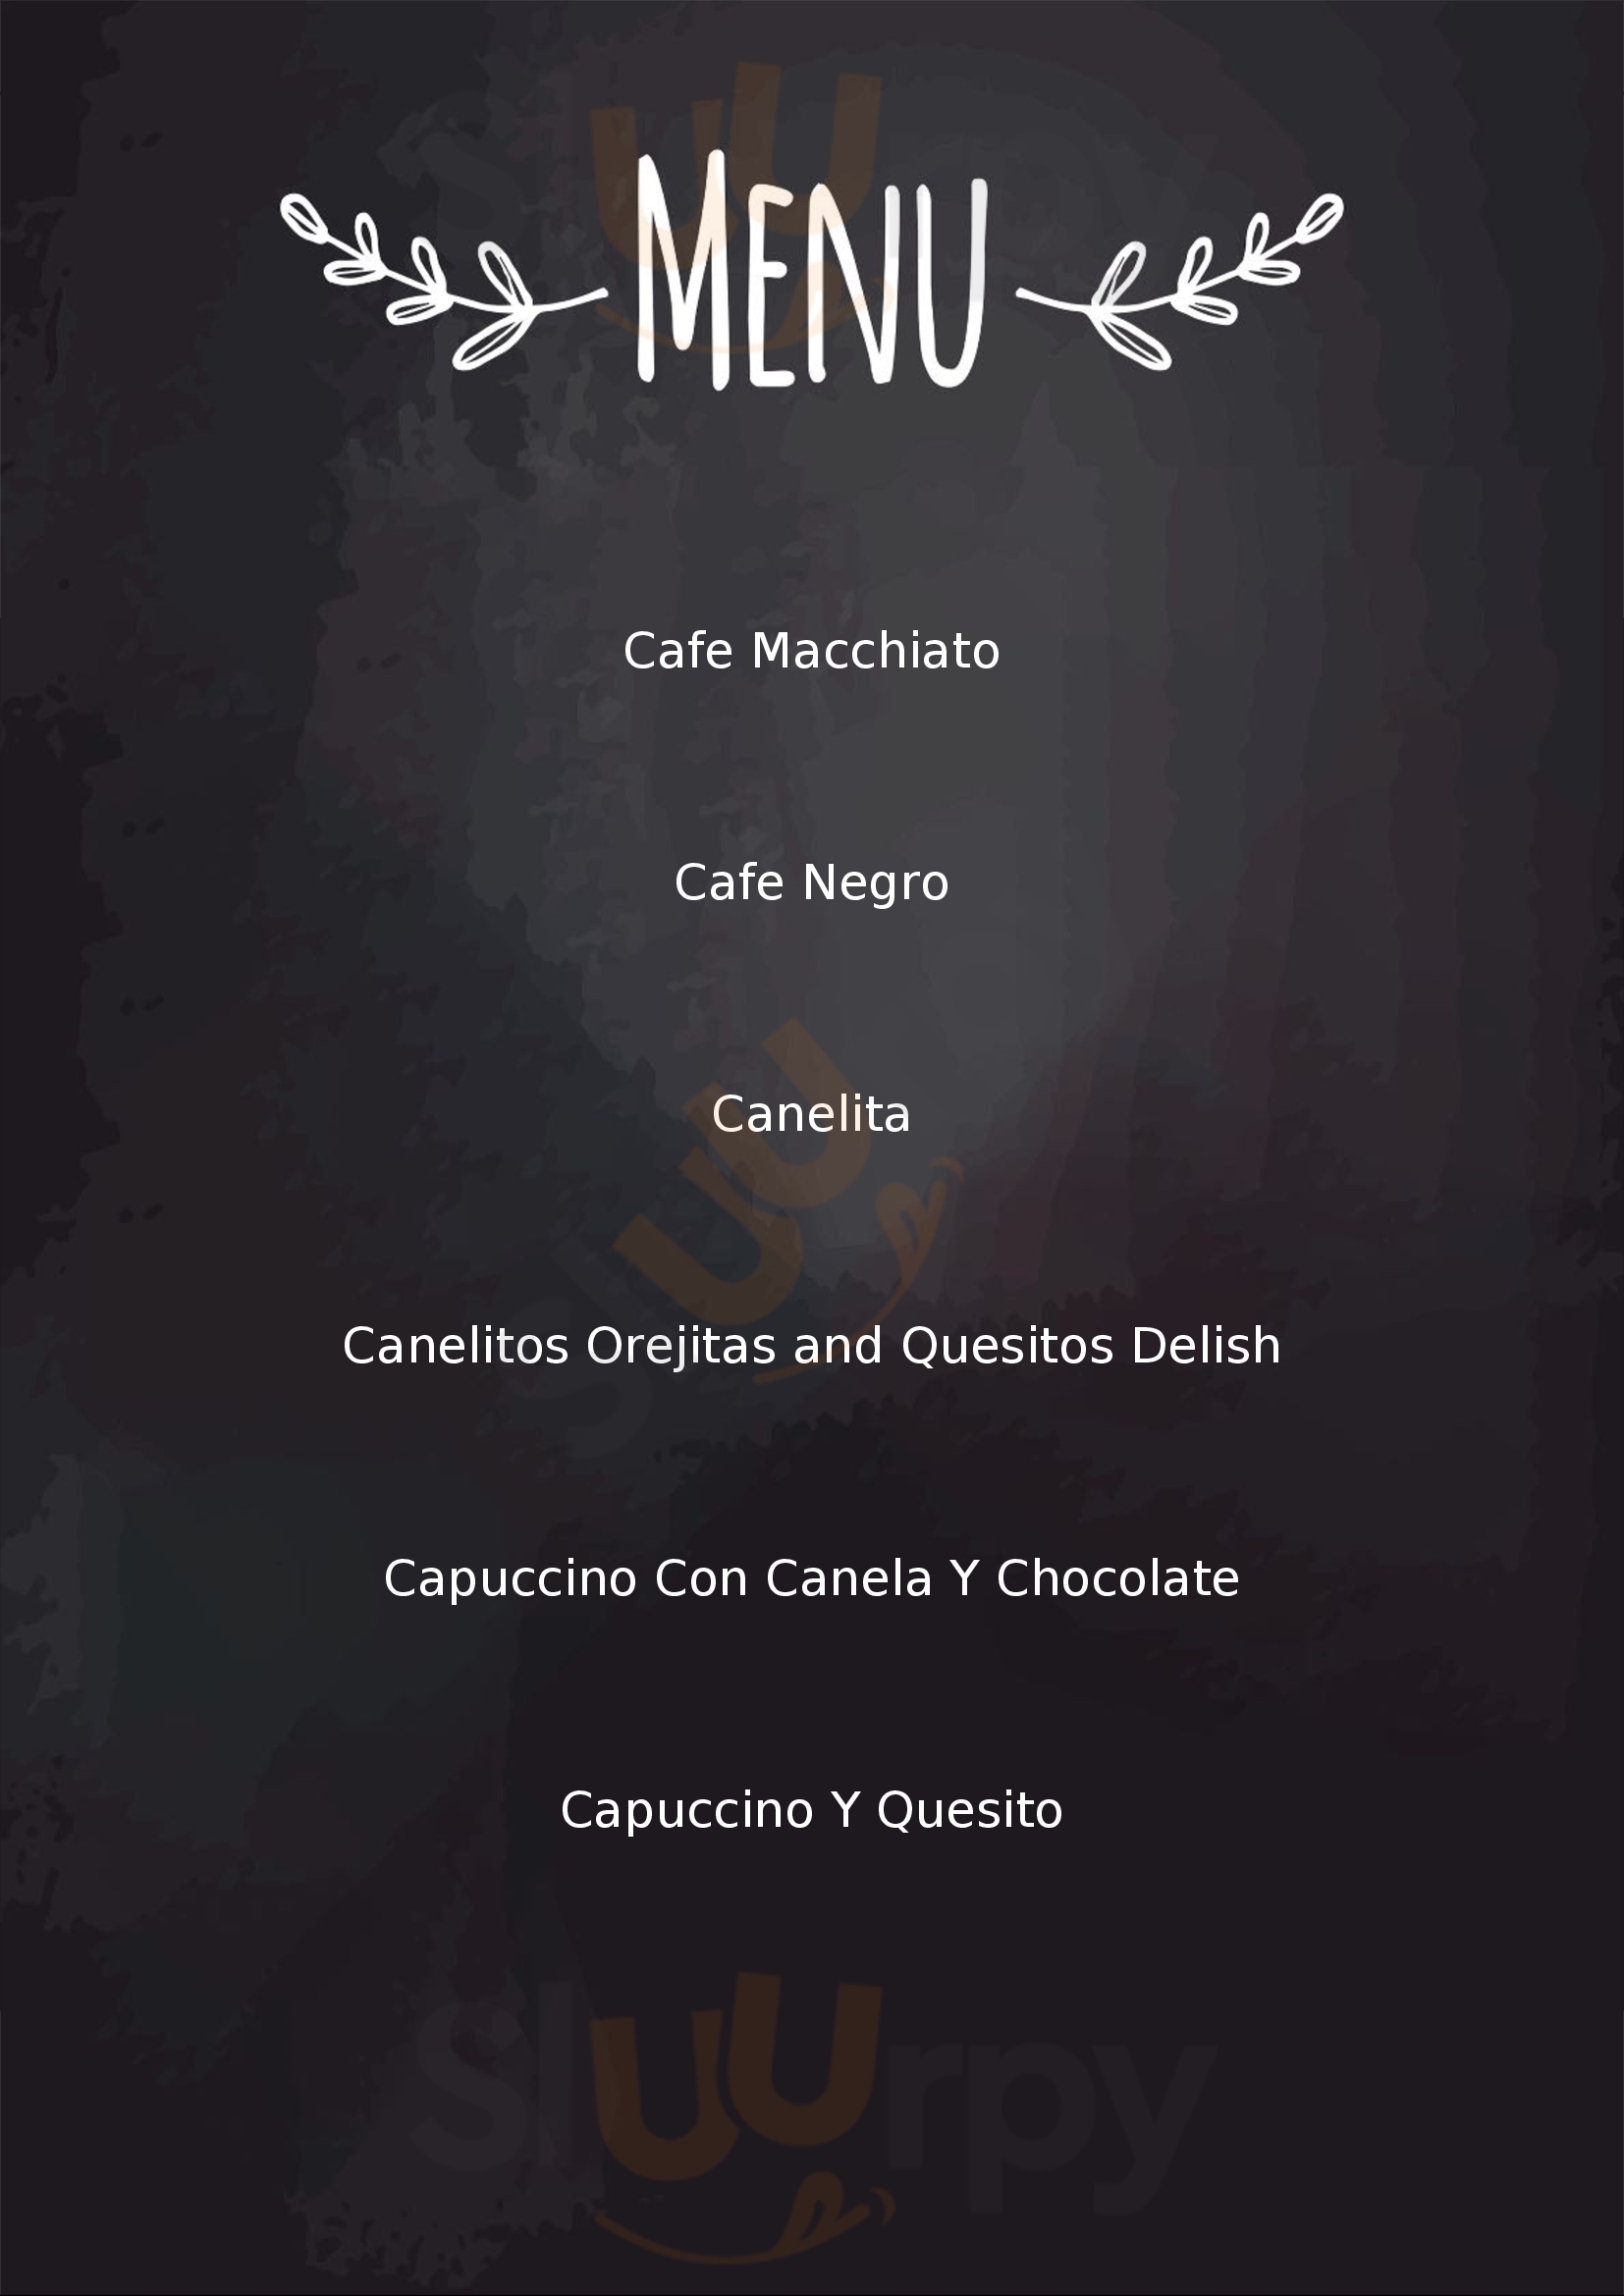 Pan & Canela Cafe Ciudad de Panamá Menu - 1